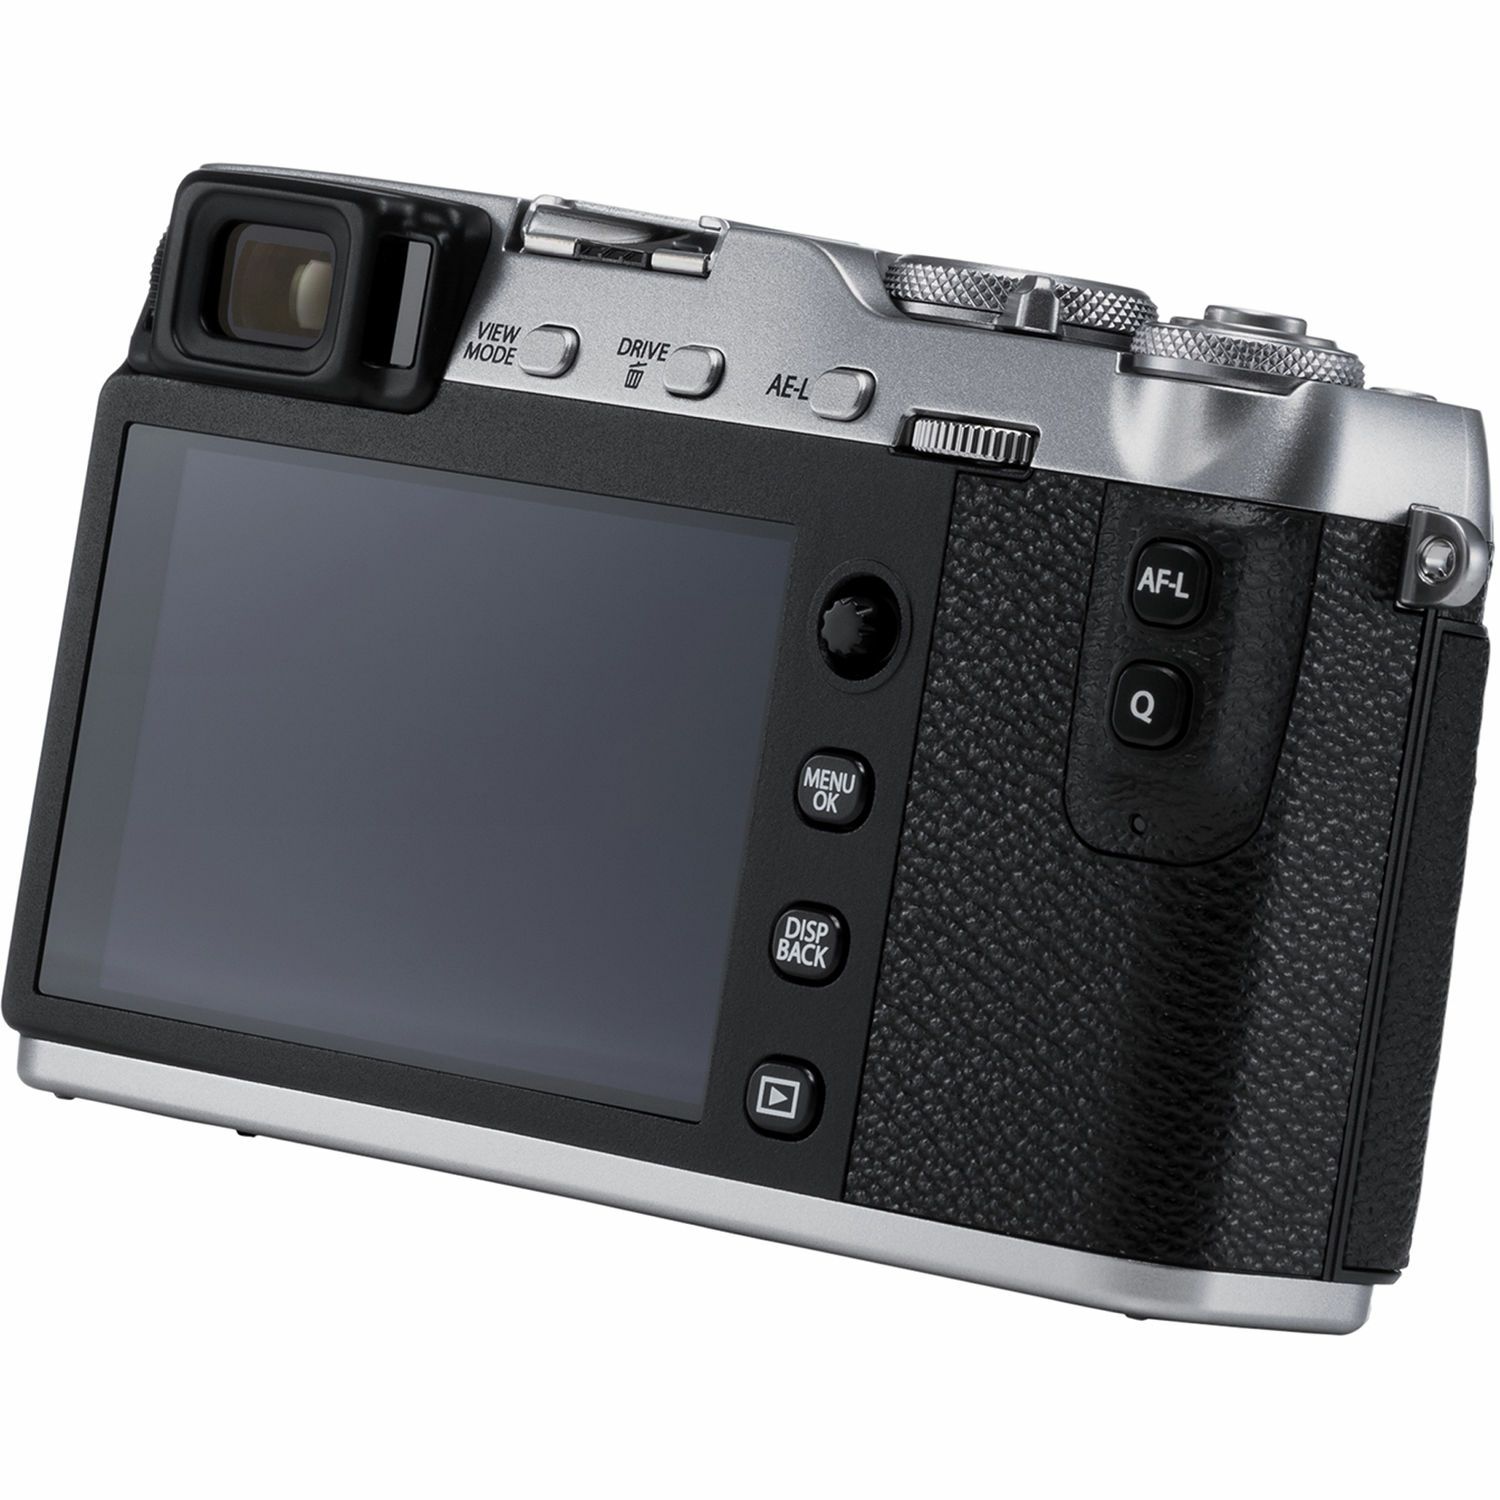 Fujifilm X-E3 + XF 23mm f/2 WR EE KIT Silver srebreni Digitalni fotoaparat s objektivom XF23mm F2 Mirrorless camera Fuji Finepix XE3